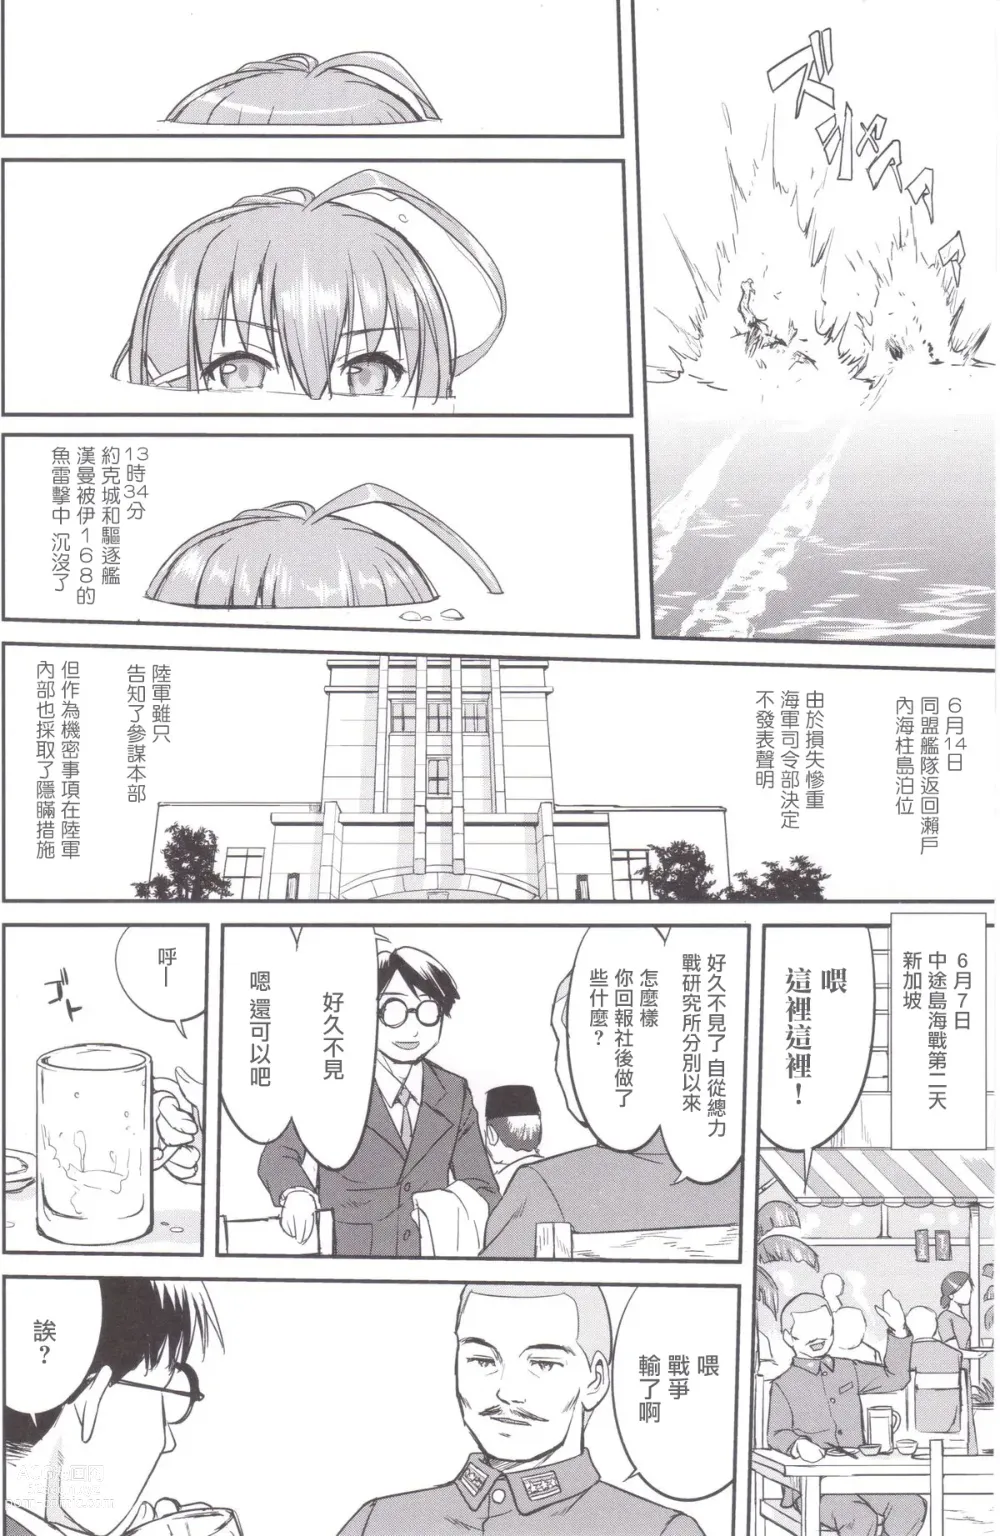 Page 55 of doujinshi Teitoku no Ketsudan MIDWAY